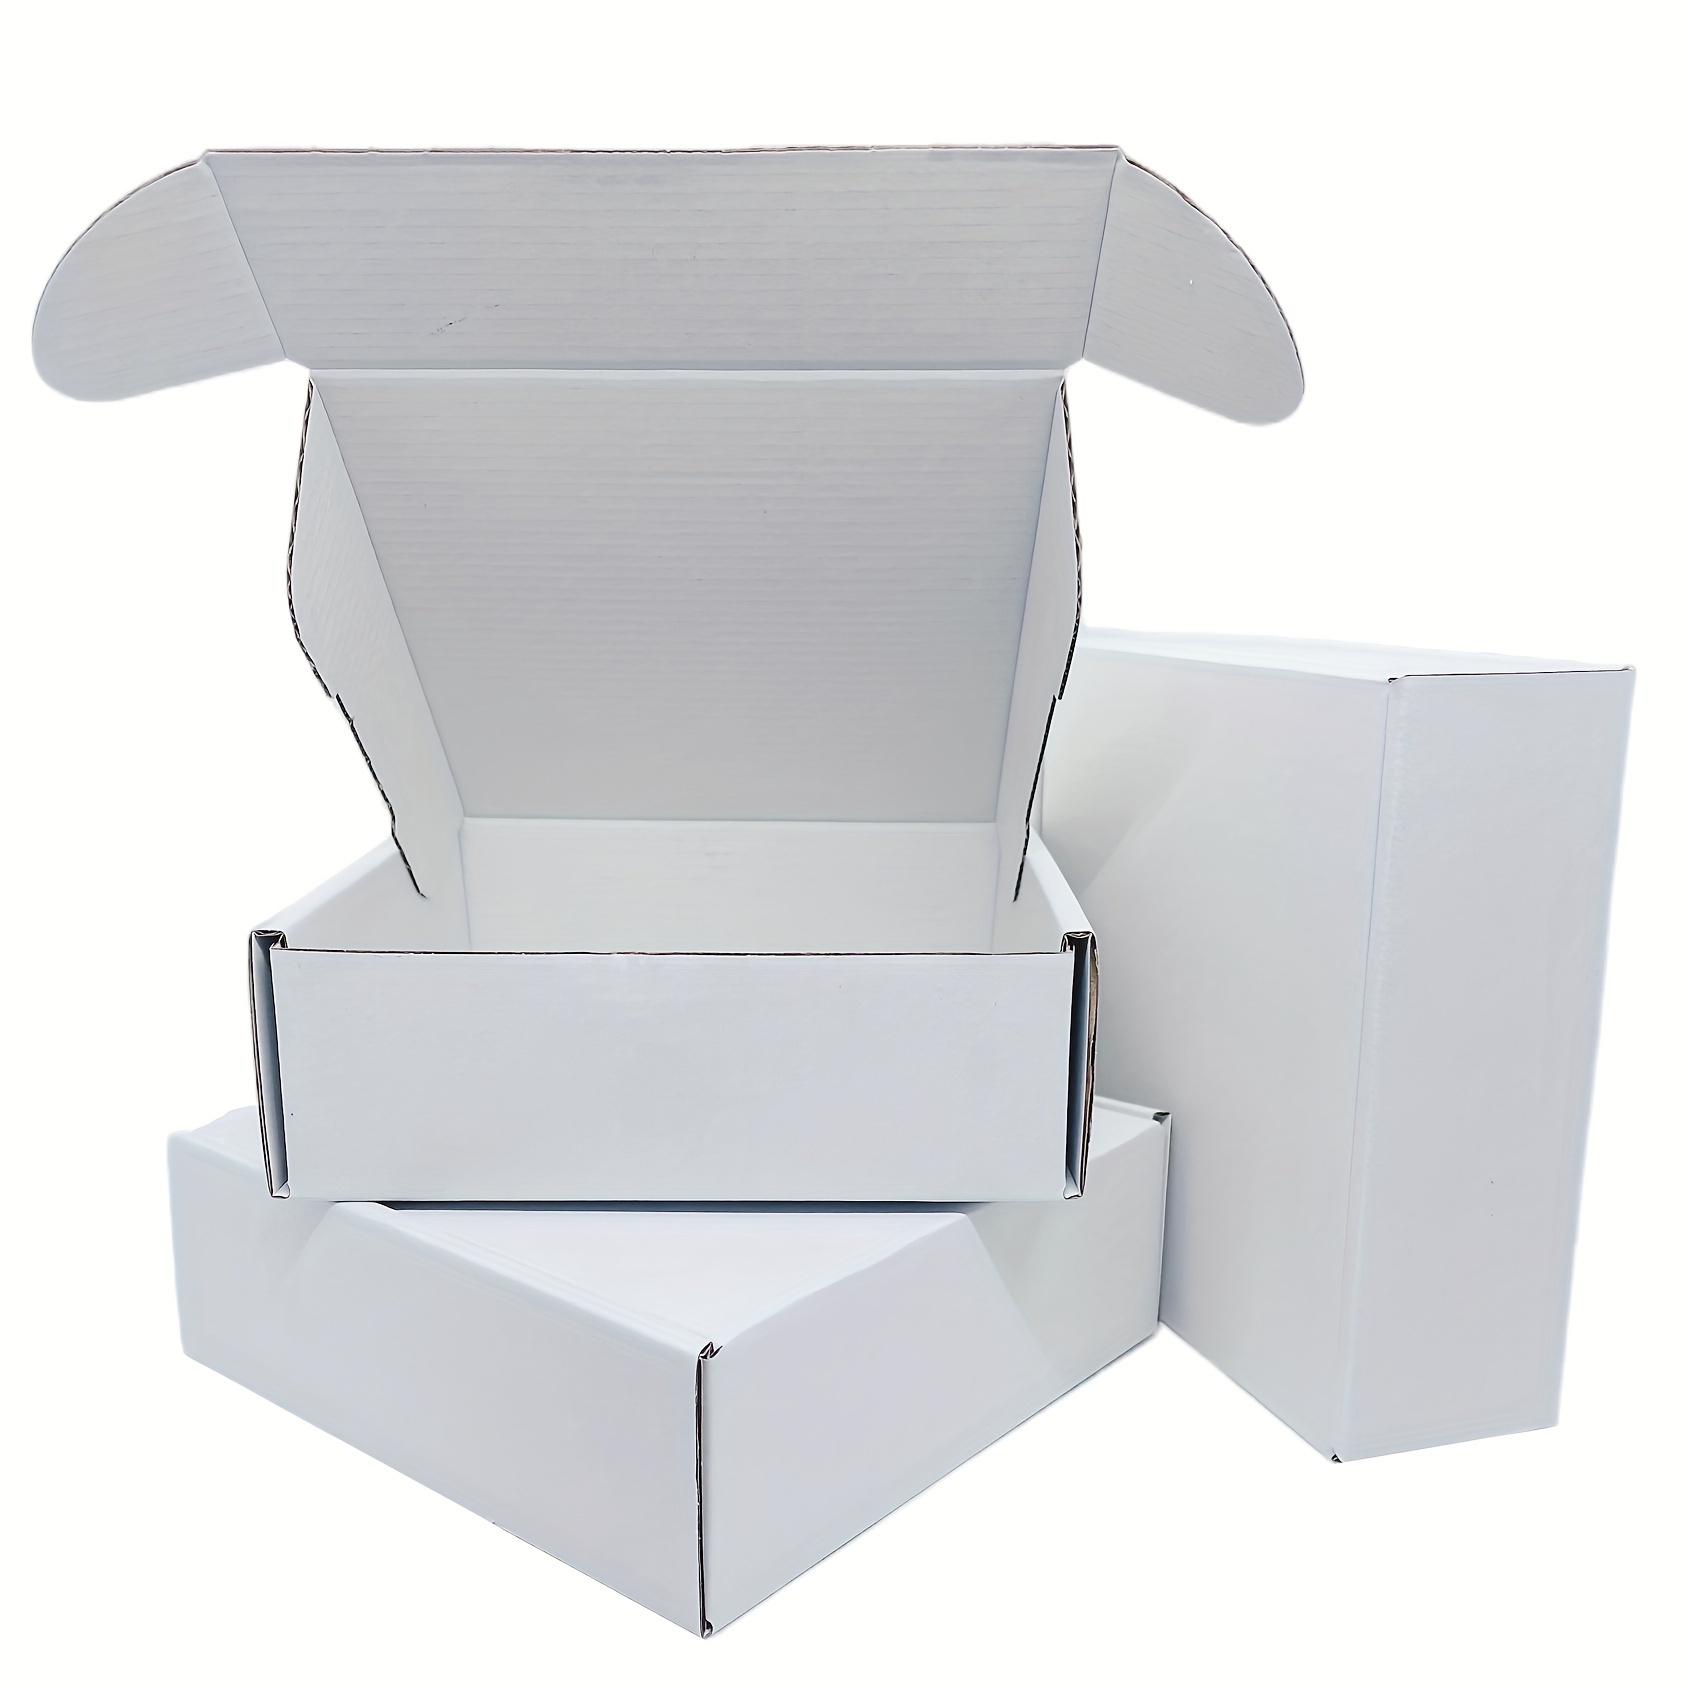 Pack de cajas para mudanzas de oficina pequeño